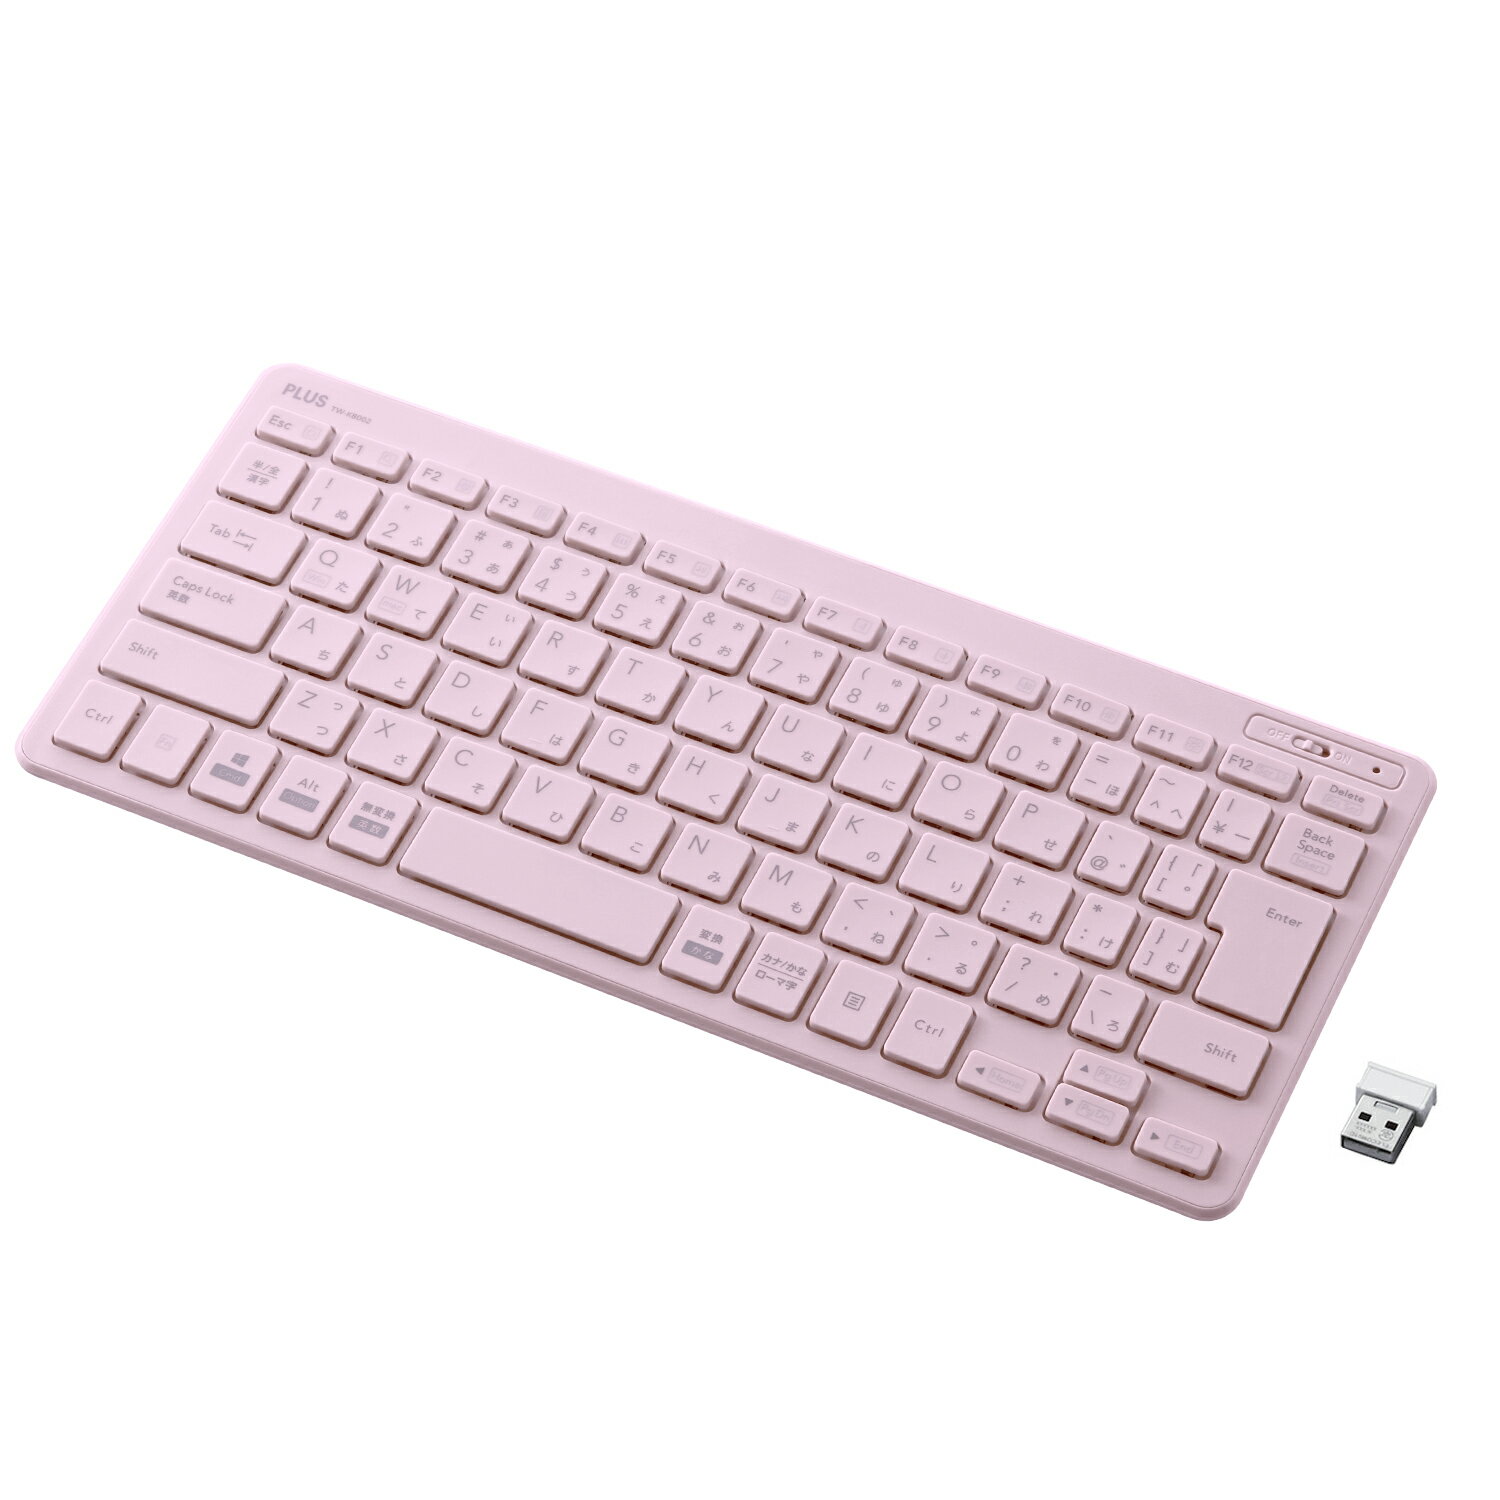 【PLUS】 薄・ミニ ワイヤレスキーボード パンタグラフ式 ピンク TW-KB002(428855) プラス